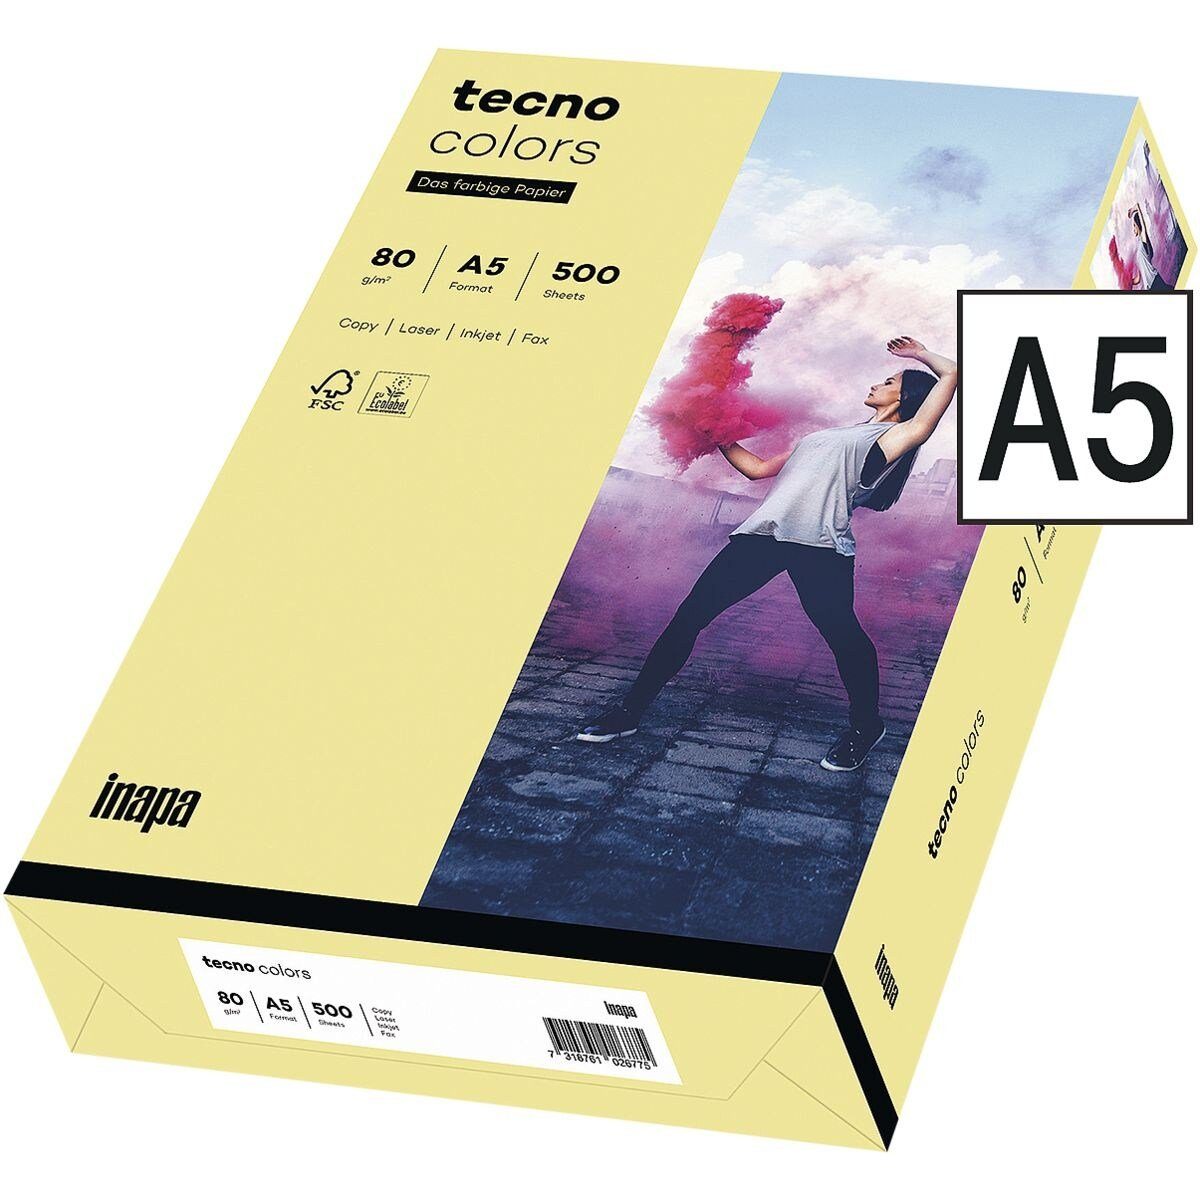 Inapa tecno Drucker- und Kopierpapier Rainbow, Pastellfarben, Format DIN A5, 80 g/m² hellgelb